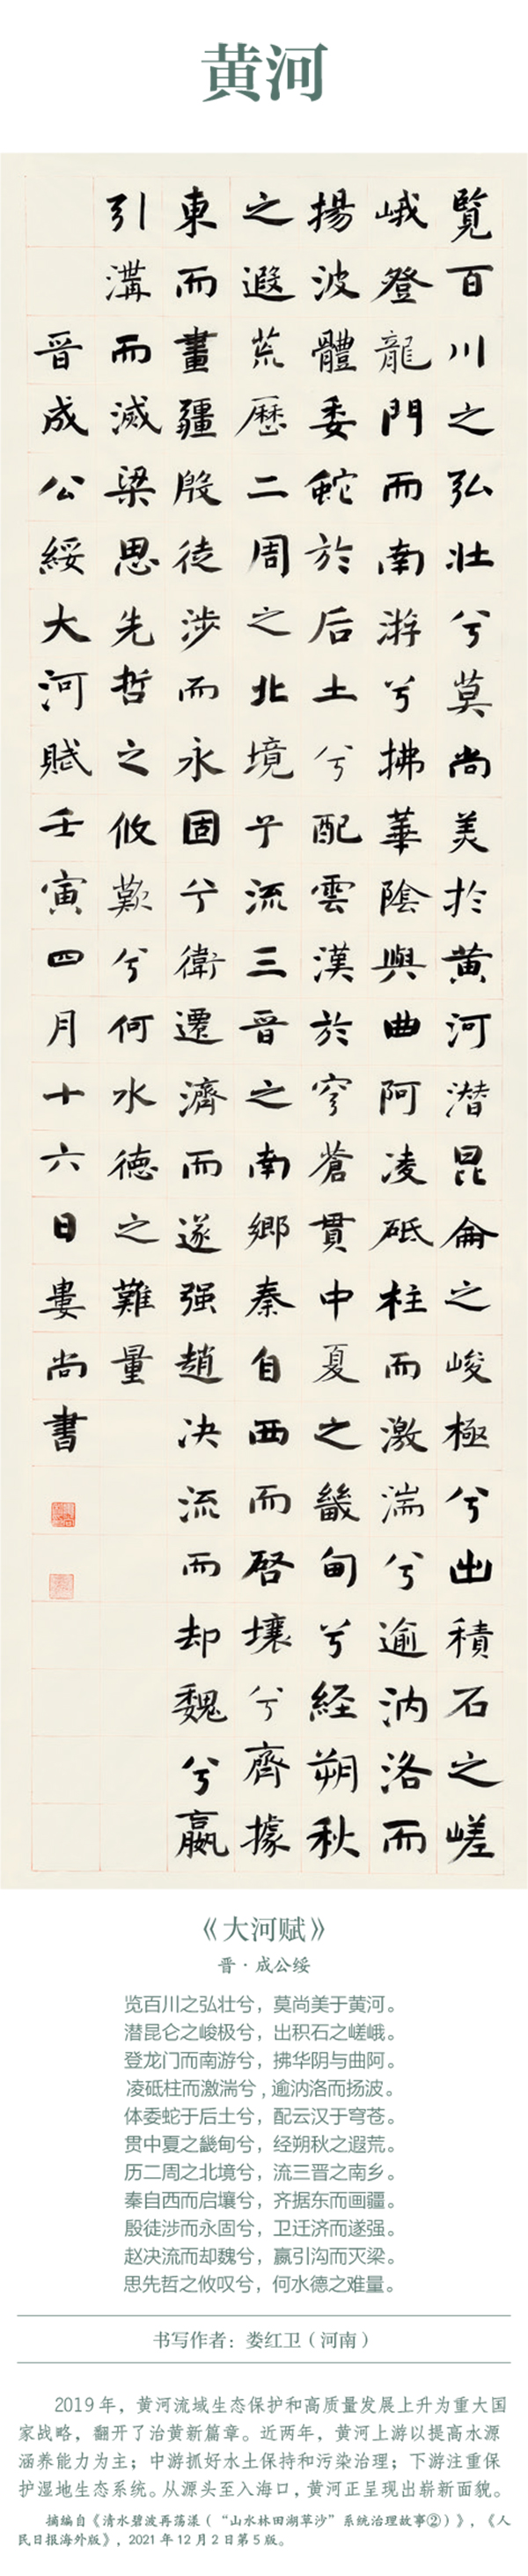 中国书协主题创作书法系列展——美丽中国插图8中国题字网